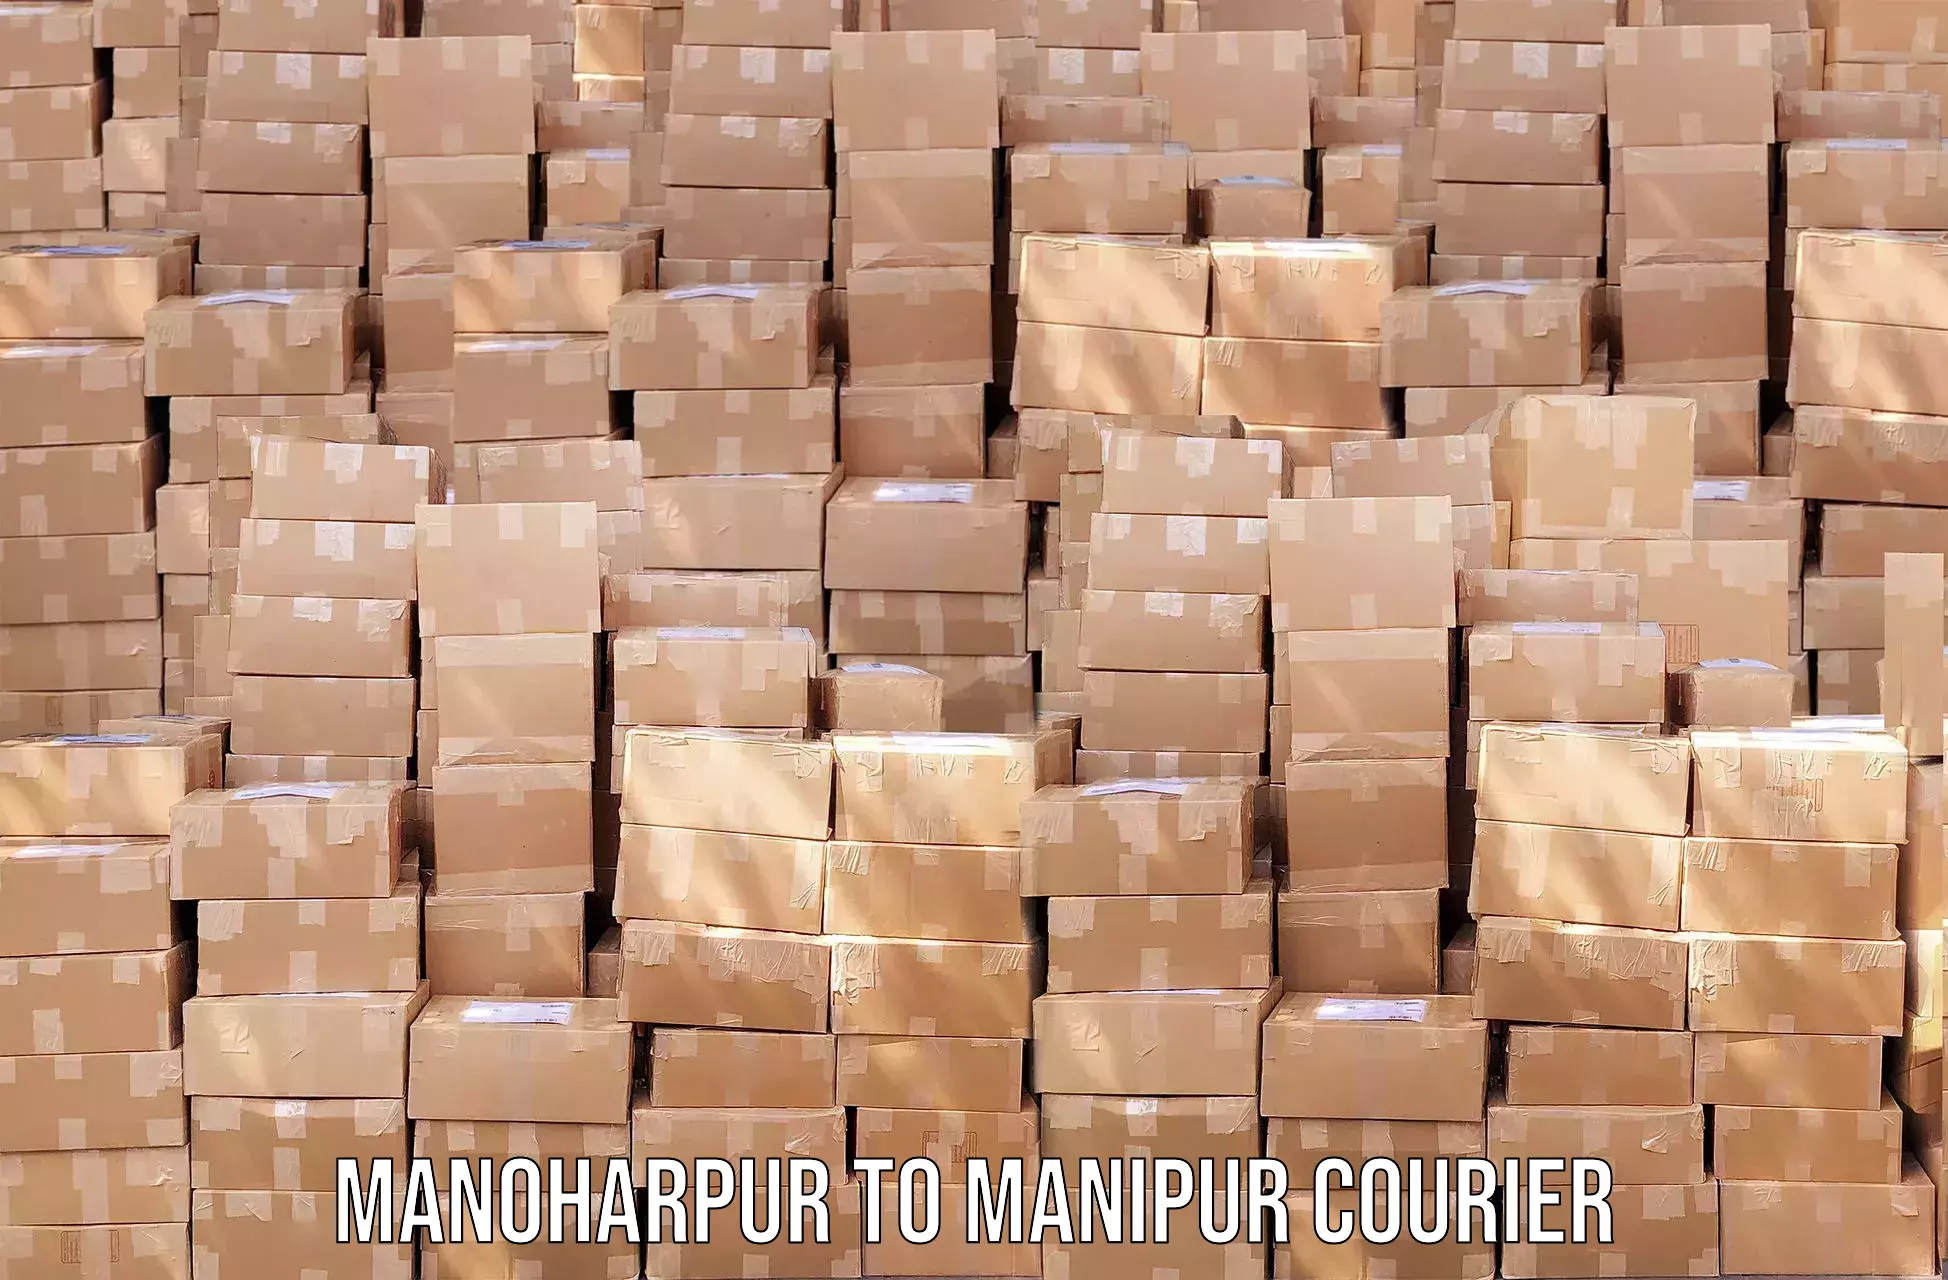 Courier app Manoharpur to Senapati